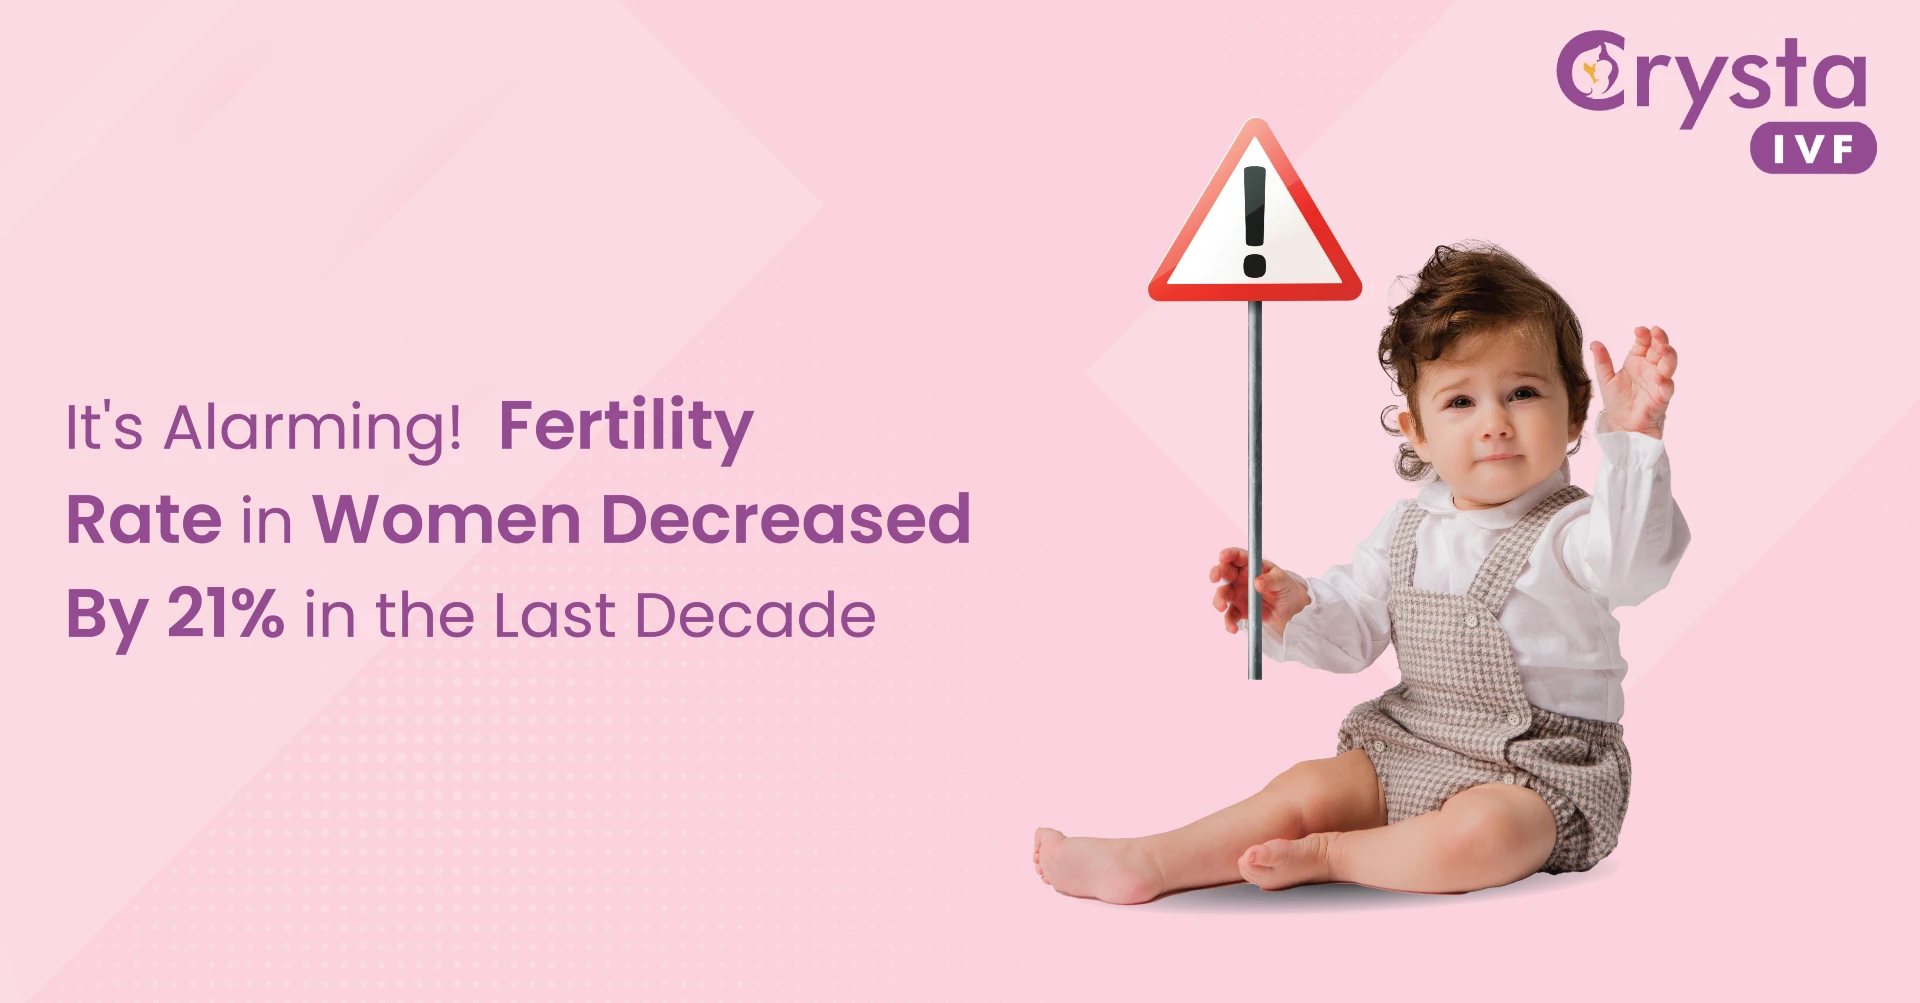 Fertility rate in women